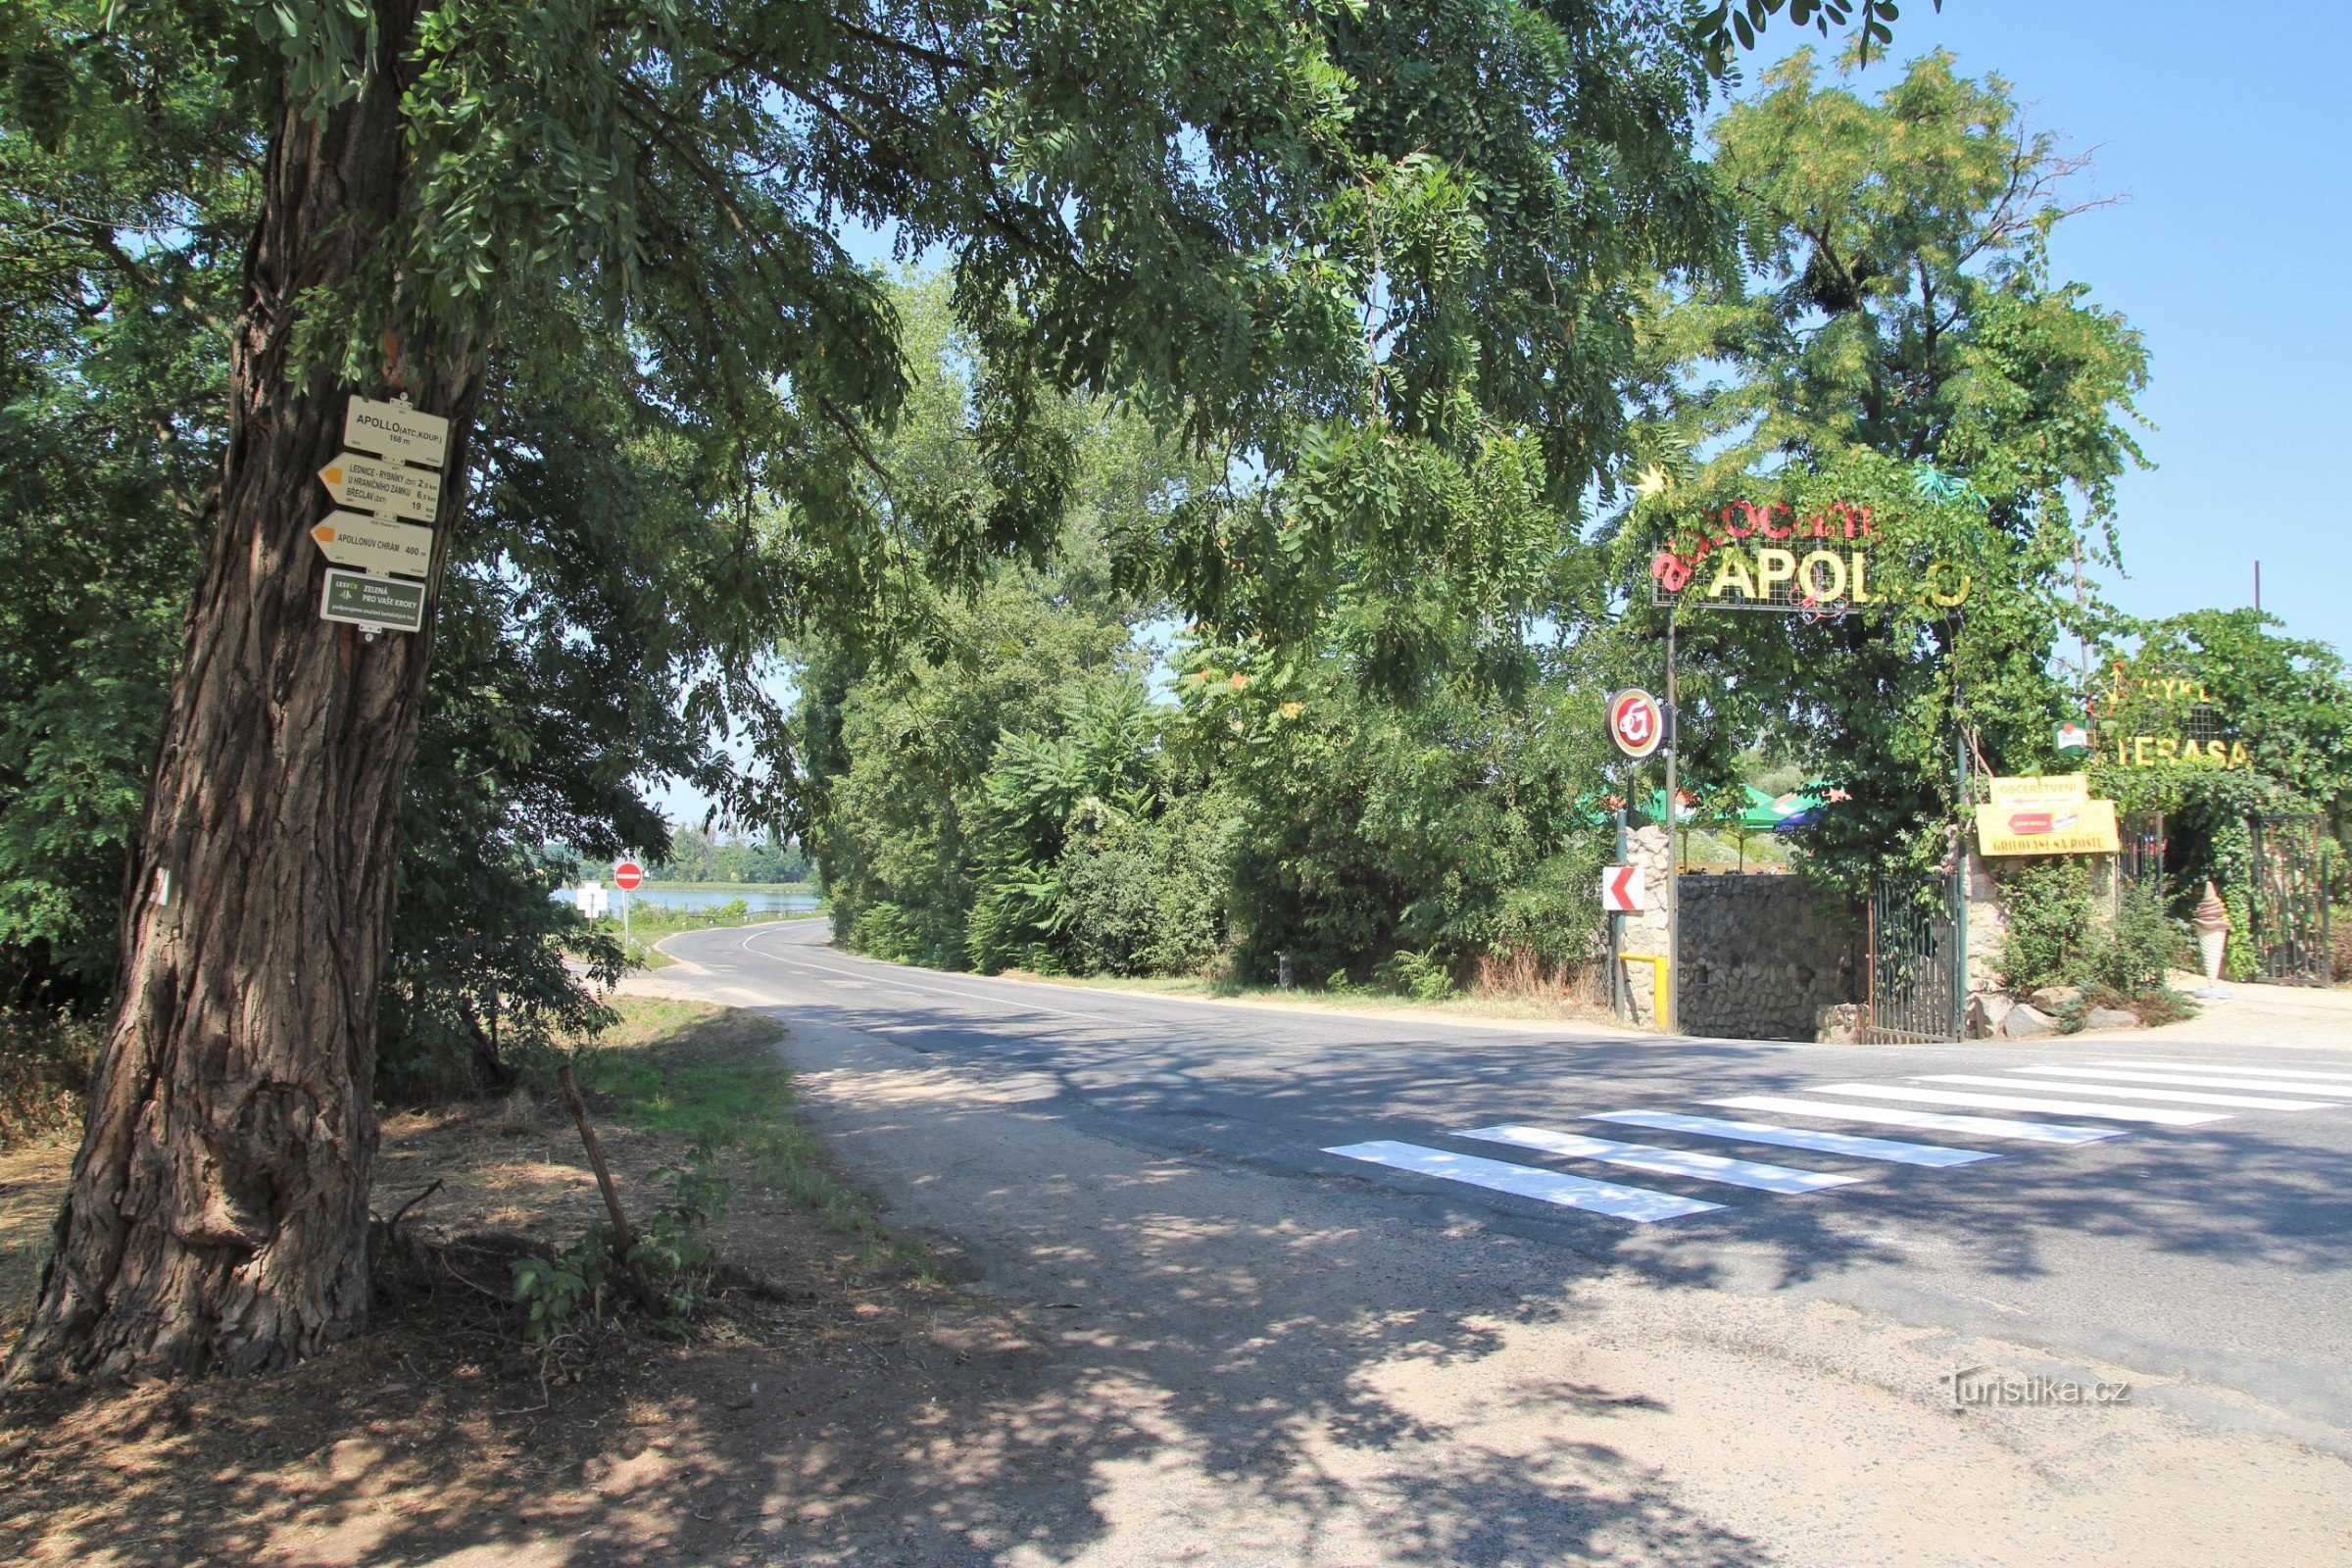 阿波罗旅游枢纽位于同名营地入口对面